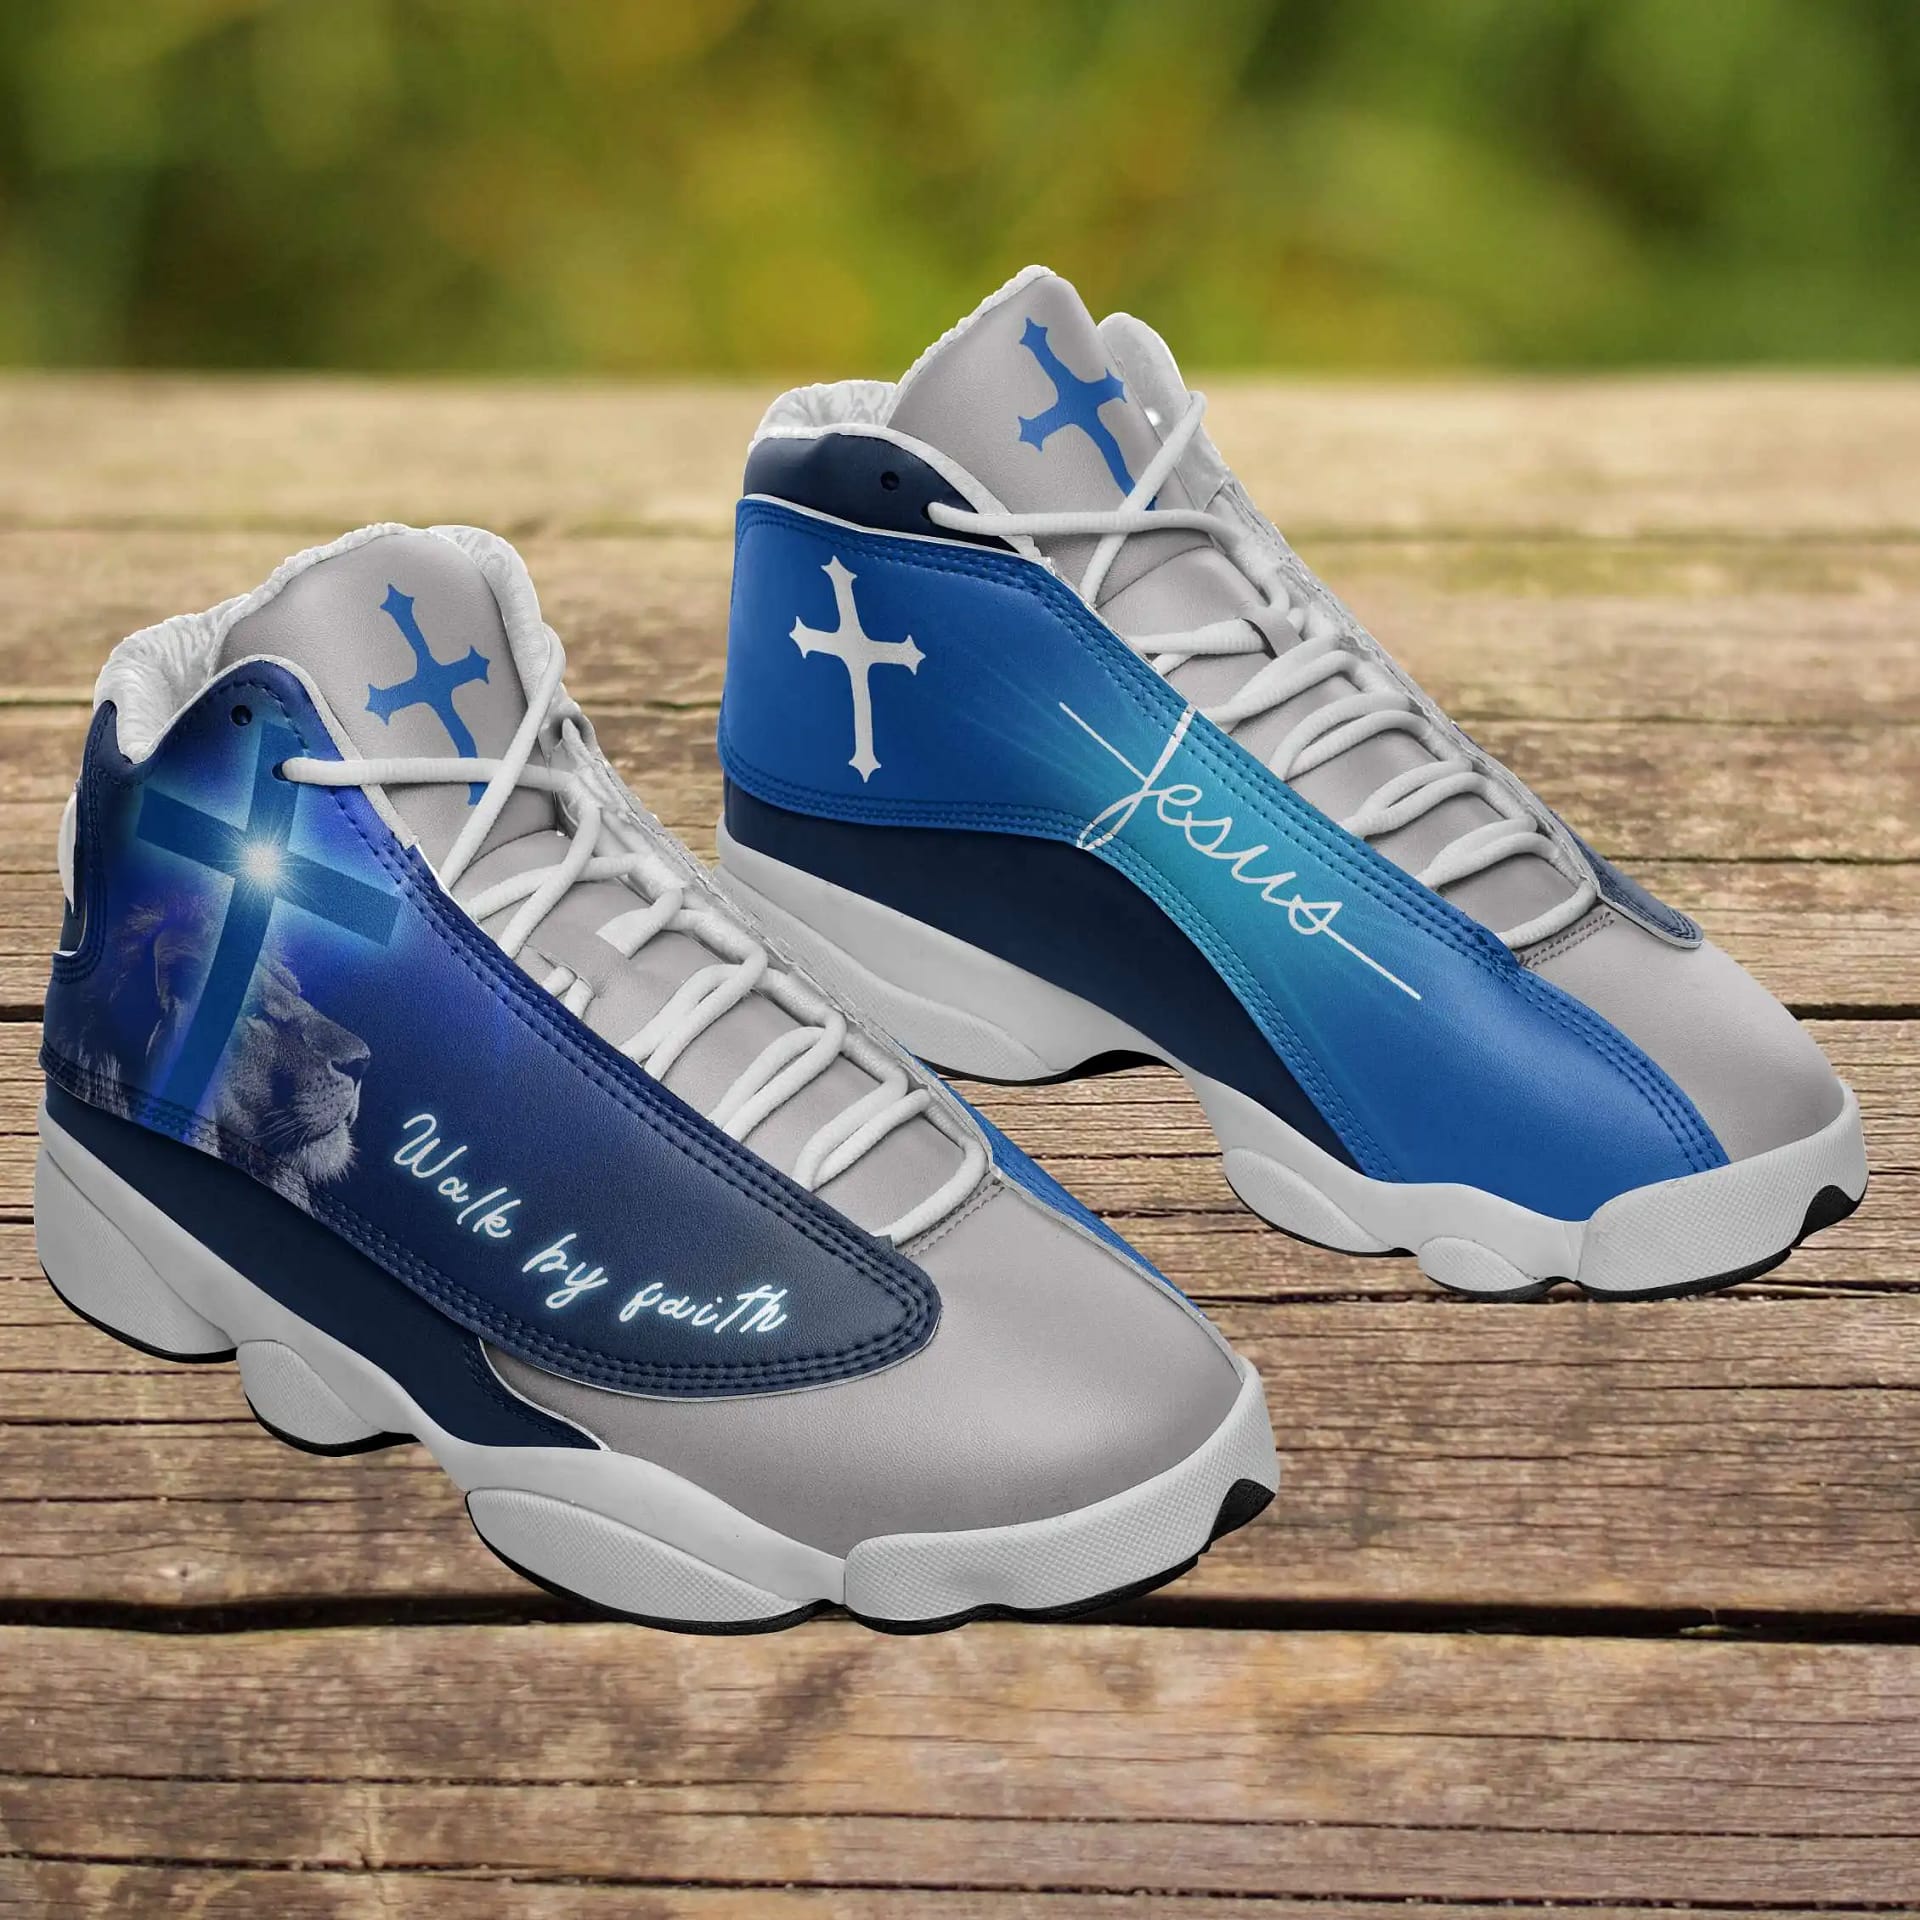 Jesus Christ Rose Cross Air Jordan Shoes